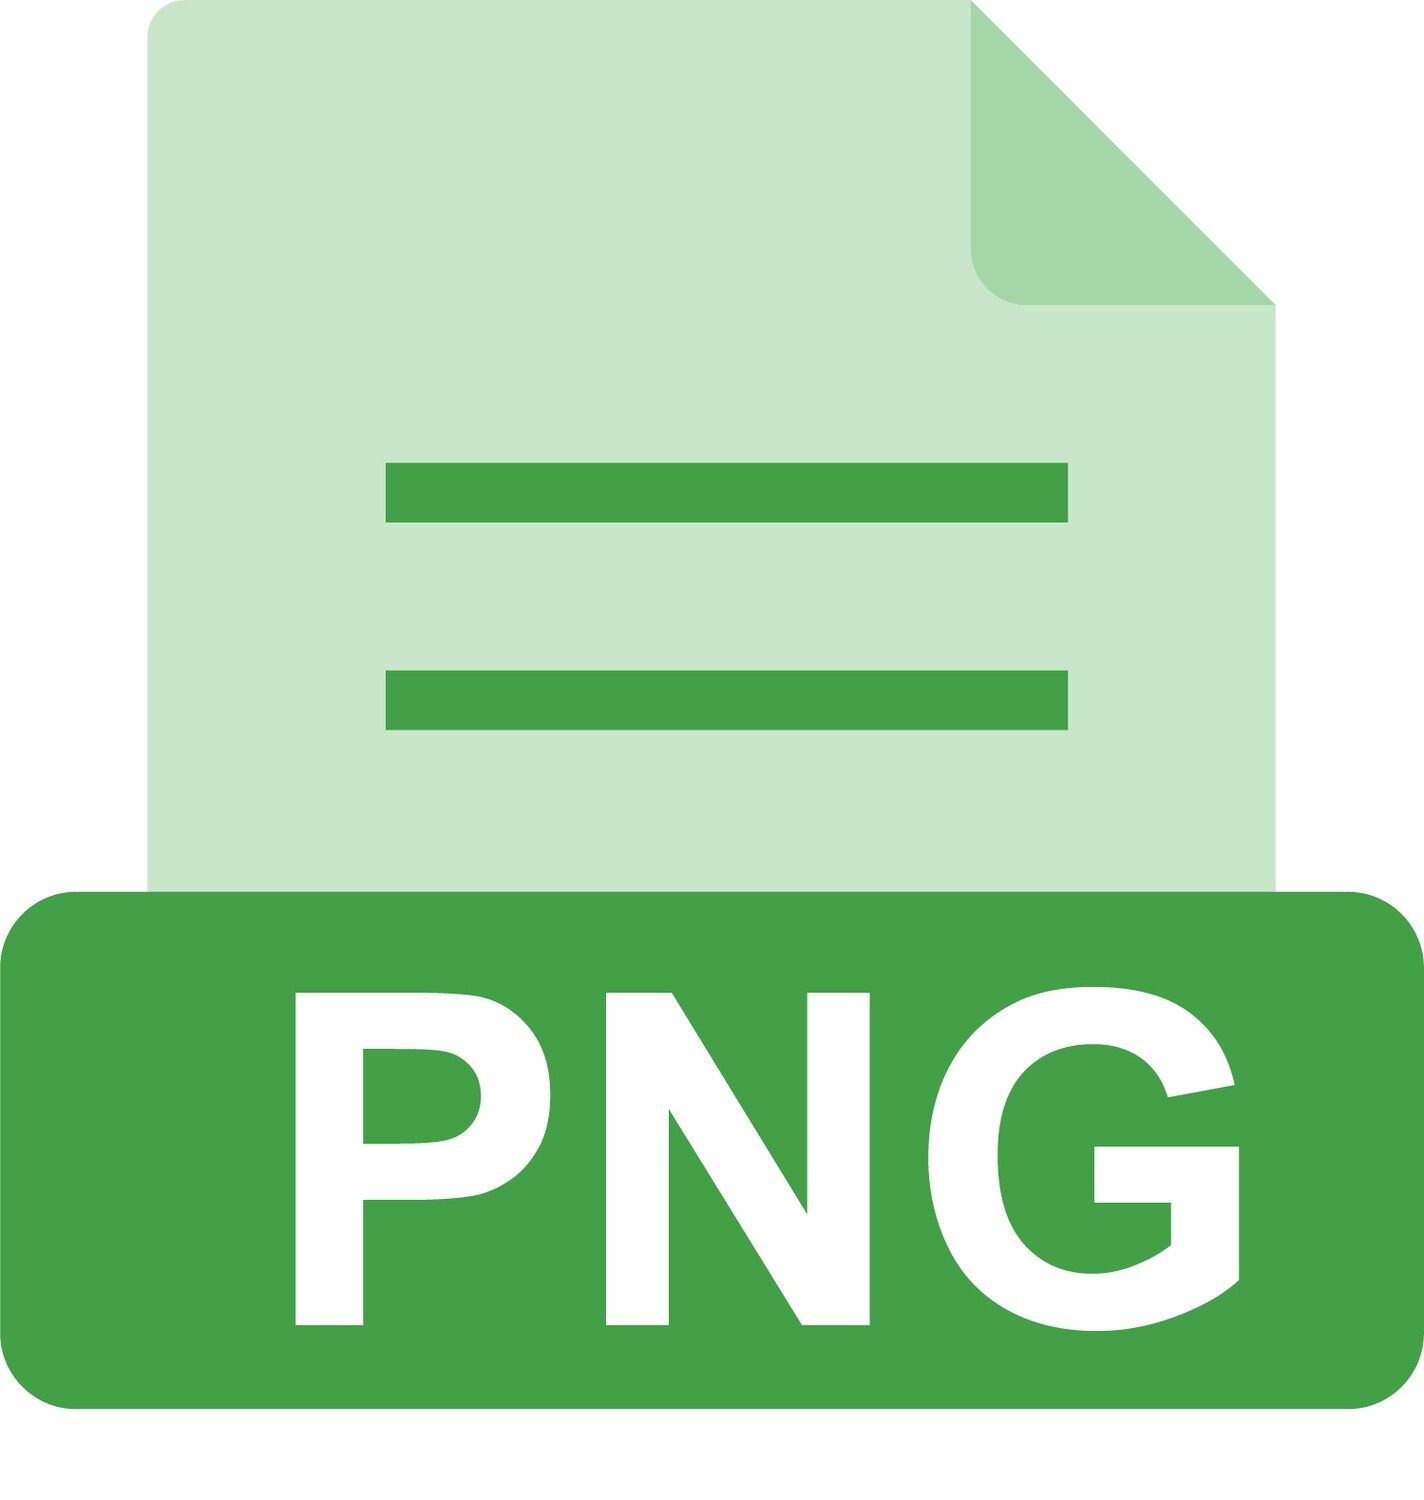 E-File: PNG, California Contractor